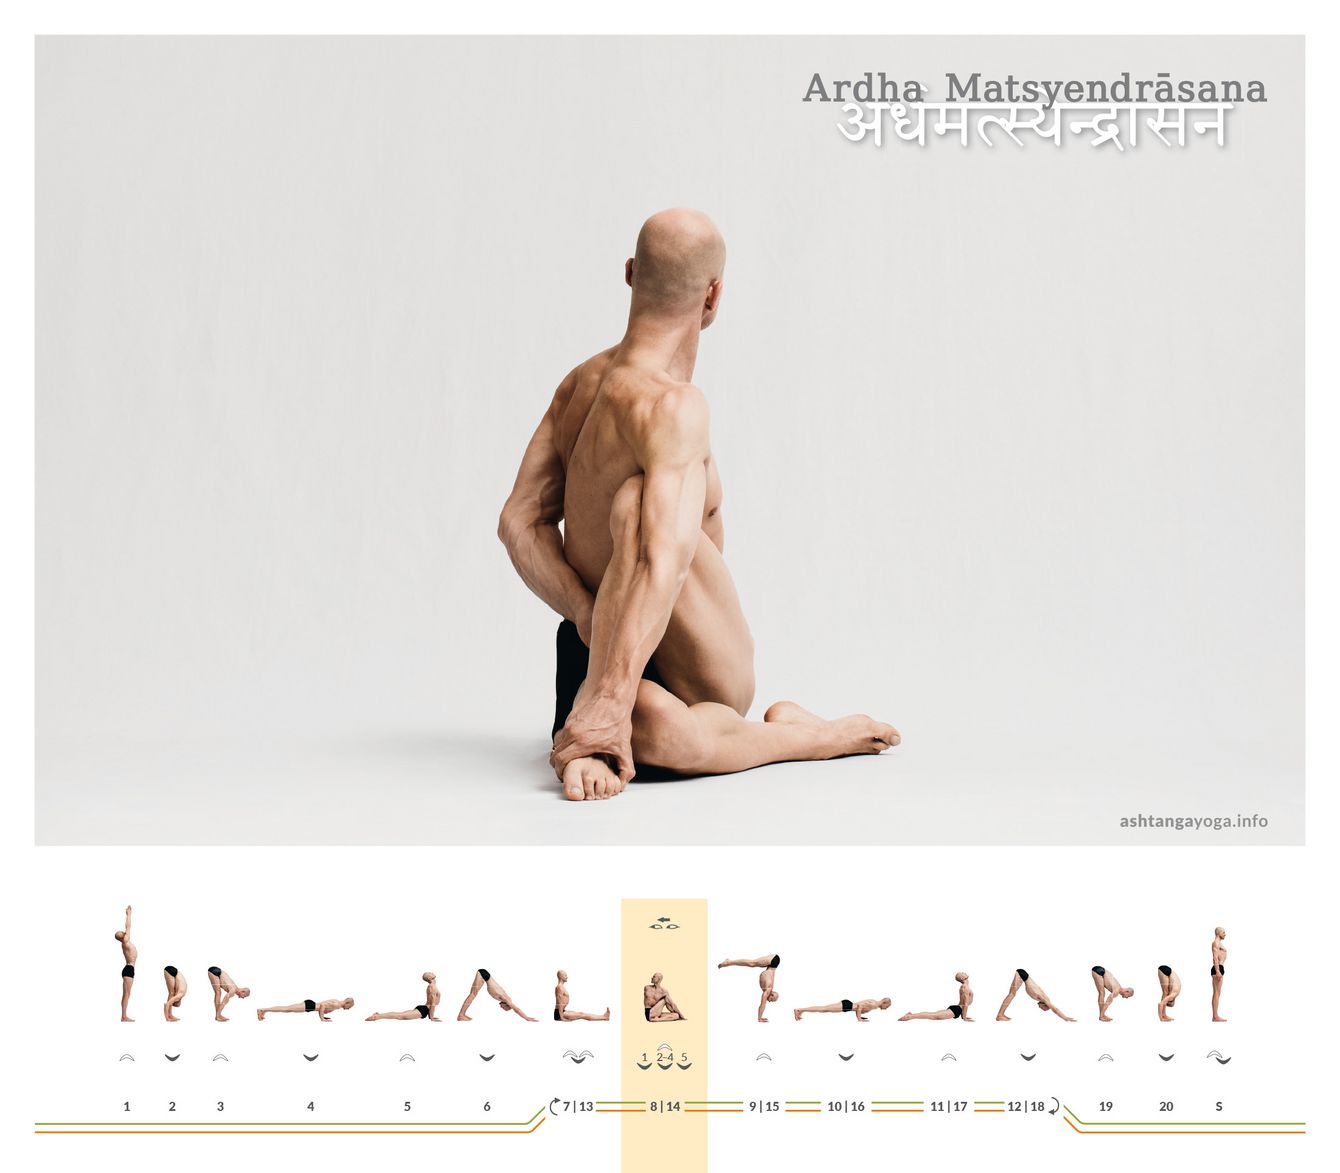 Der “Drehsitz” ist eine der klassischen Haltungen, die schon in alten Texten des Hatha Yoga beschrieben sind. Ein Bein befindet sich gebeugt am Boden, das andere ist darüber gestellt - Ardha Matsyendrasana. 